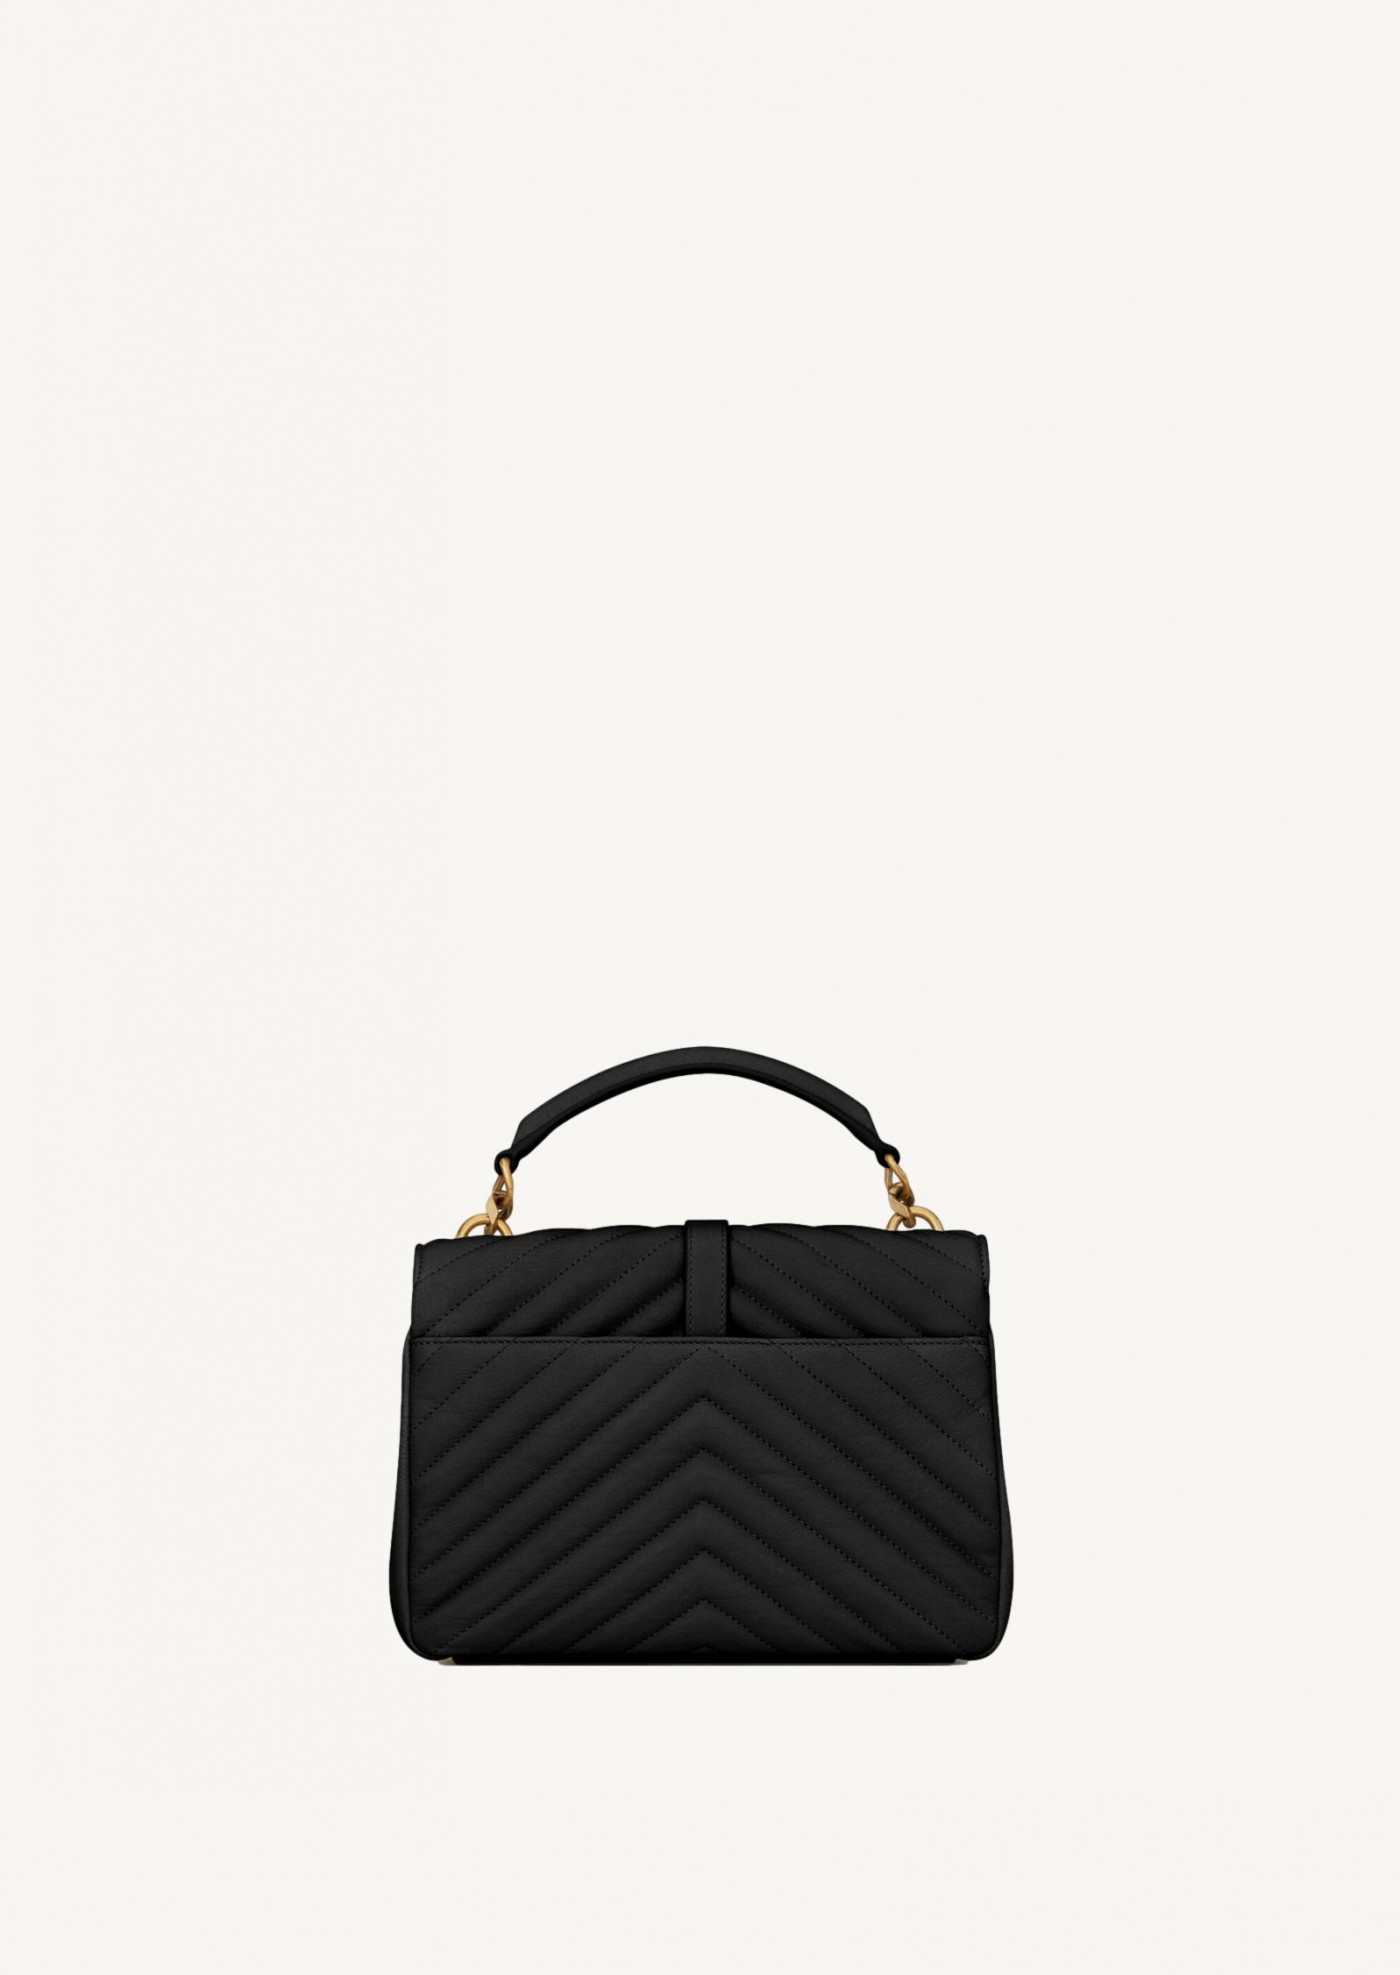 Black quilted leather medium satchel